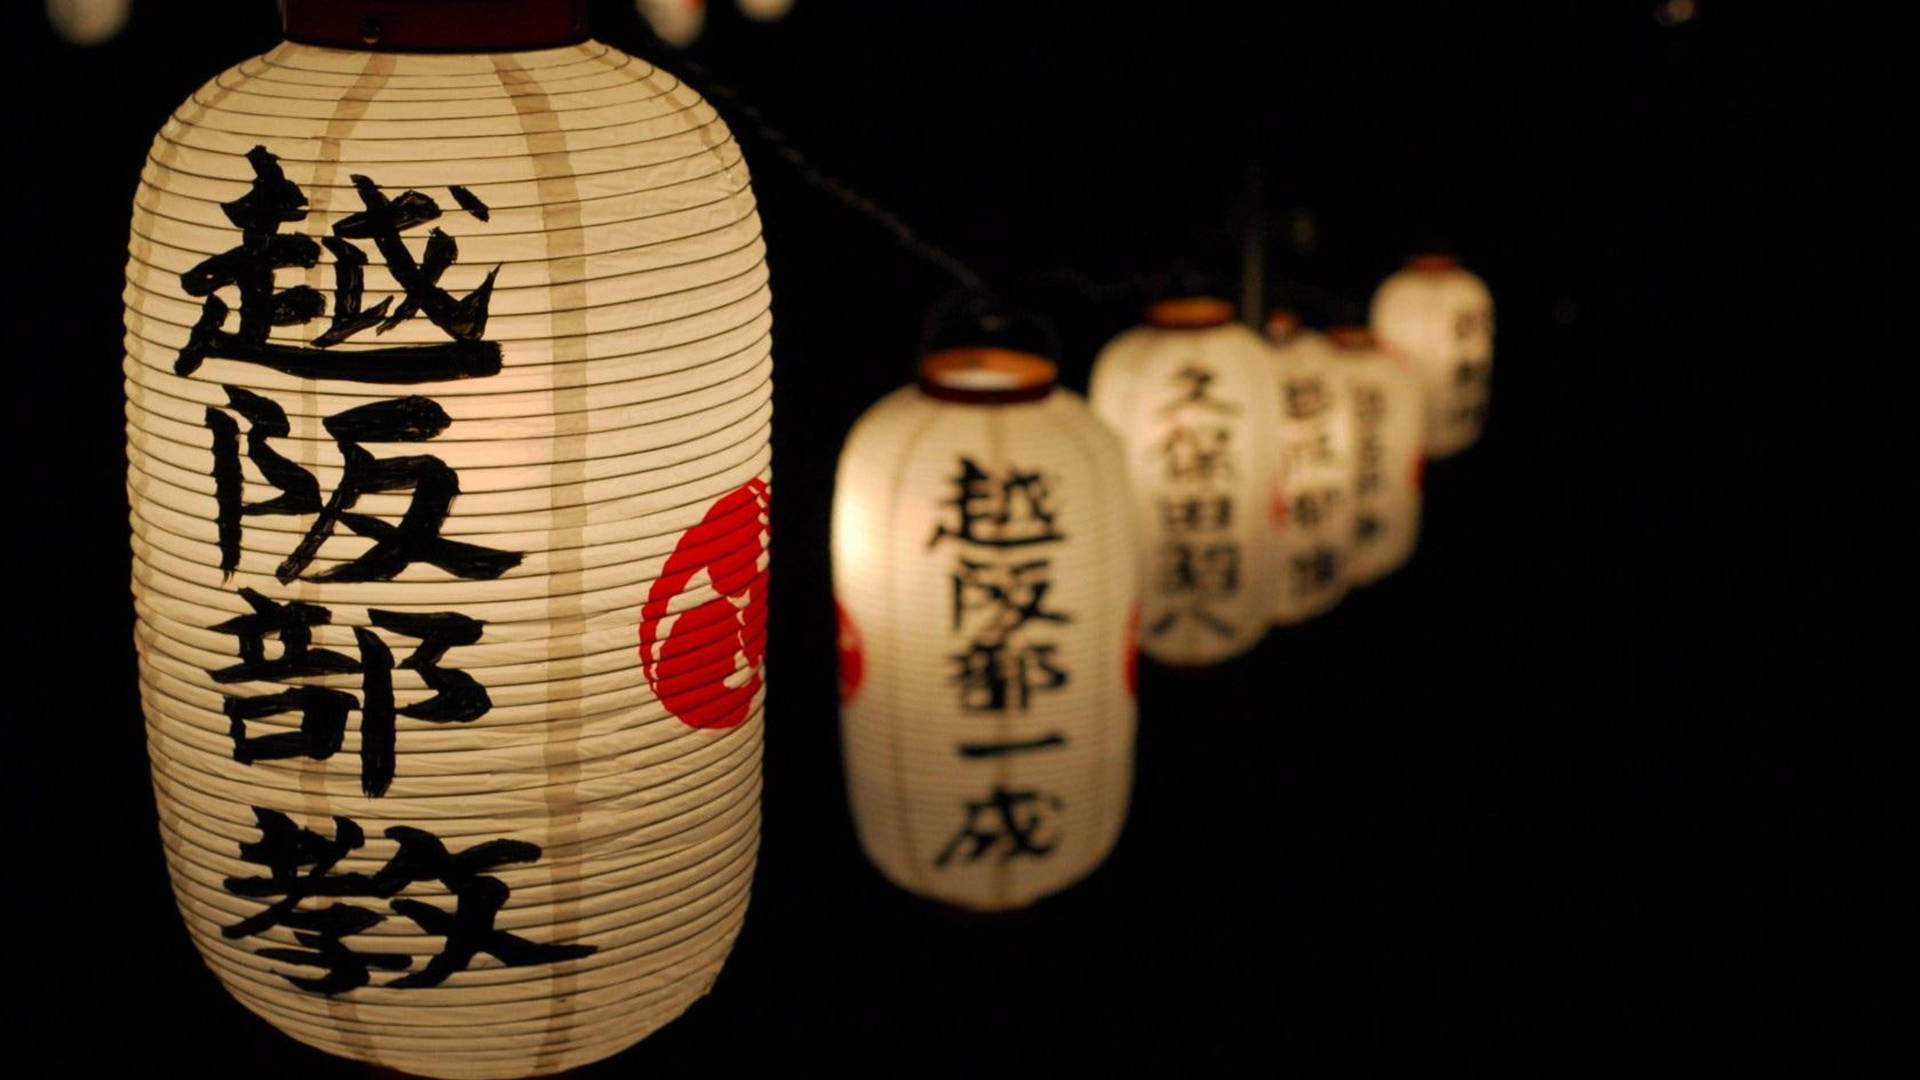 Cool Japanese Kanji Lanterns